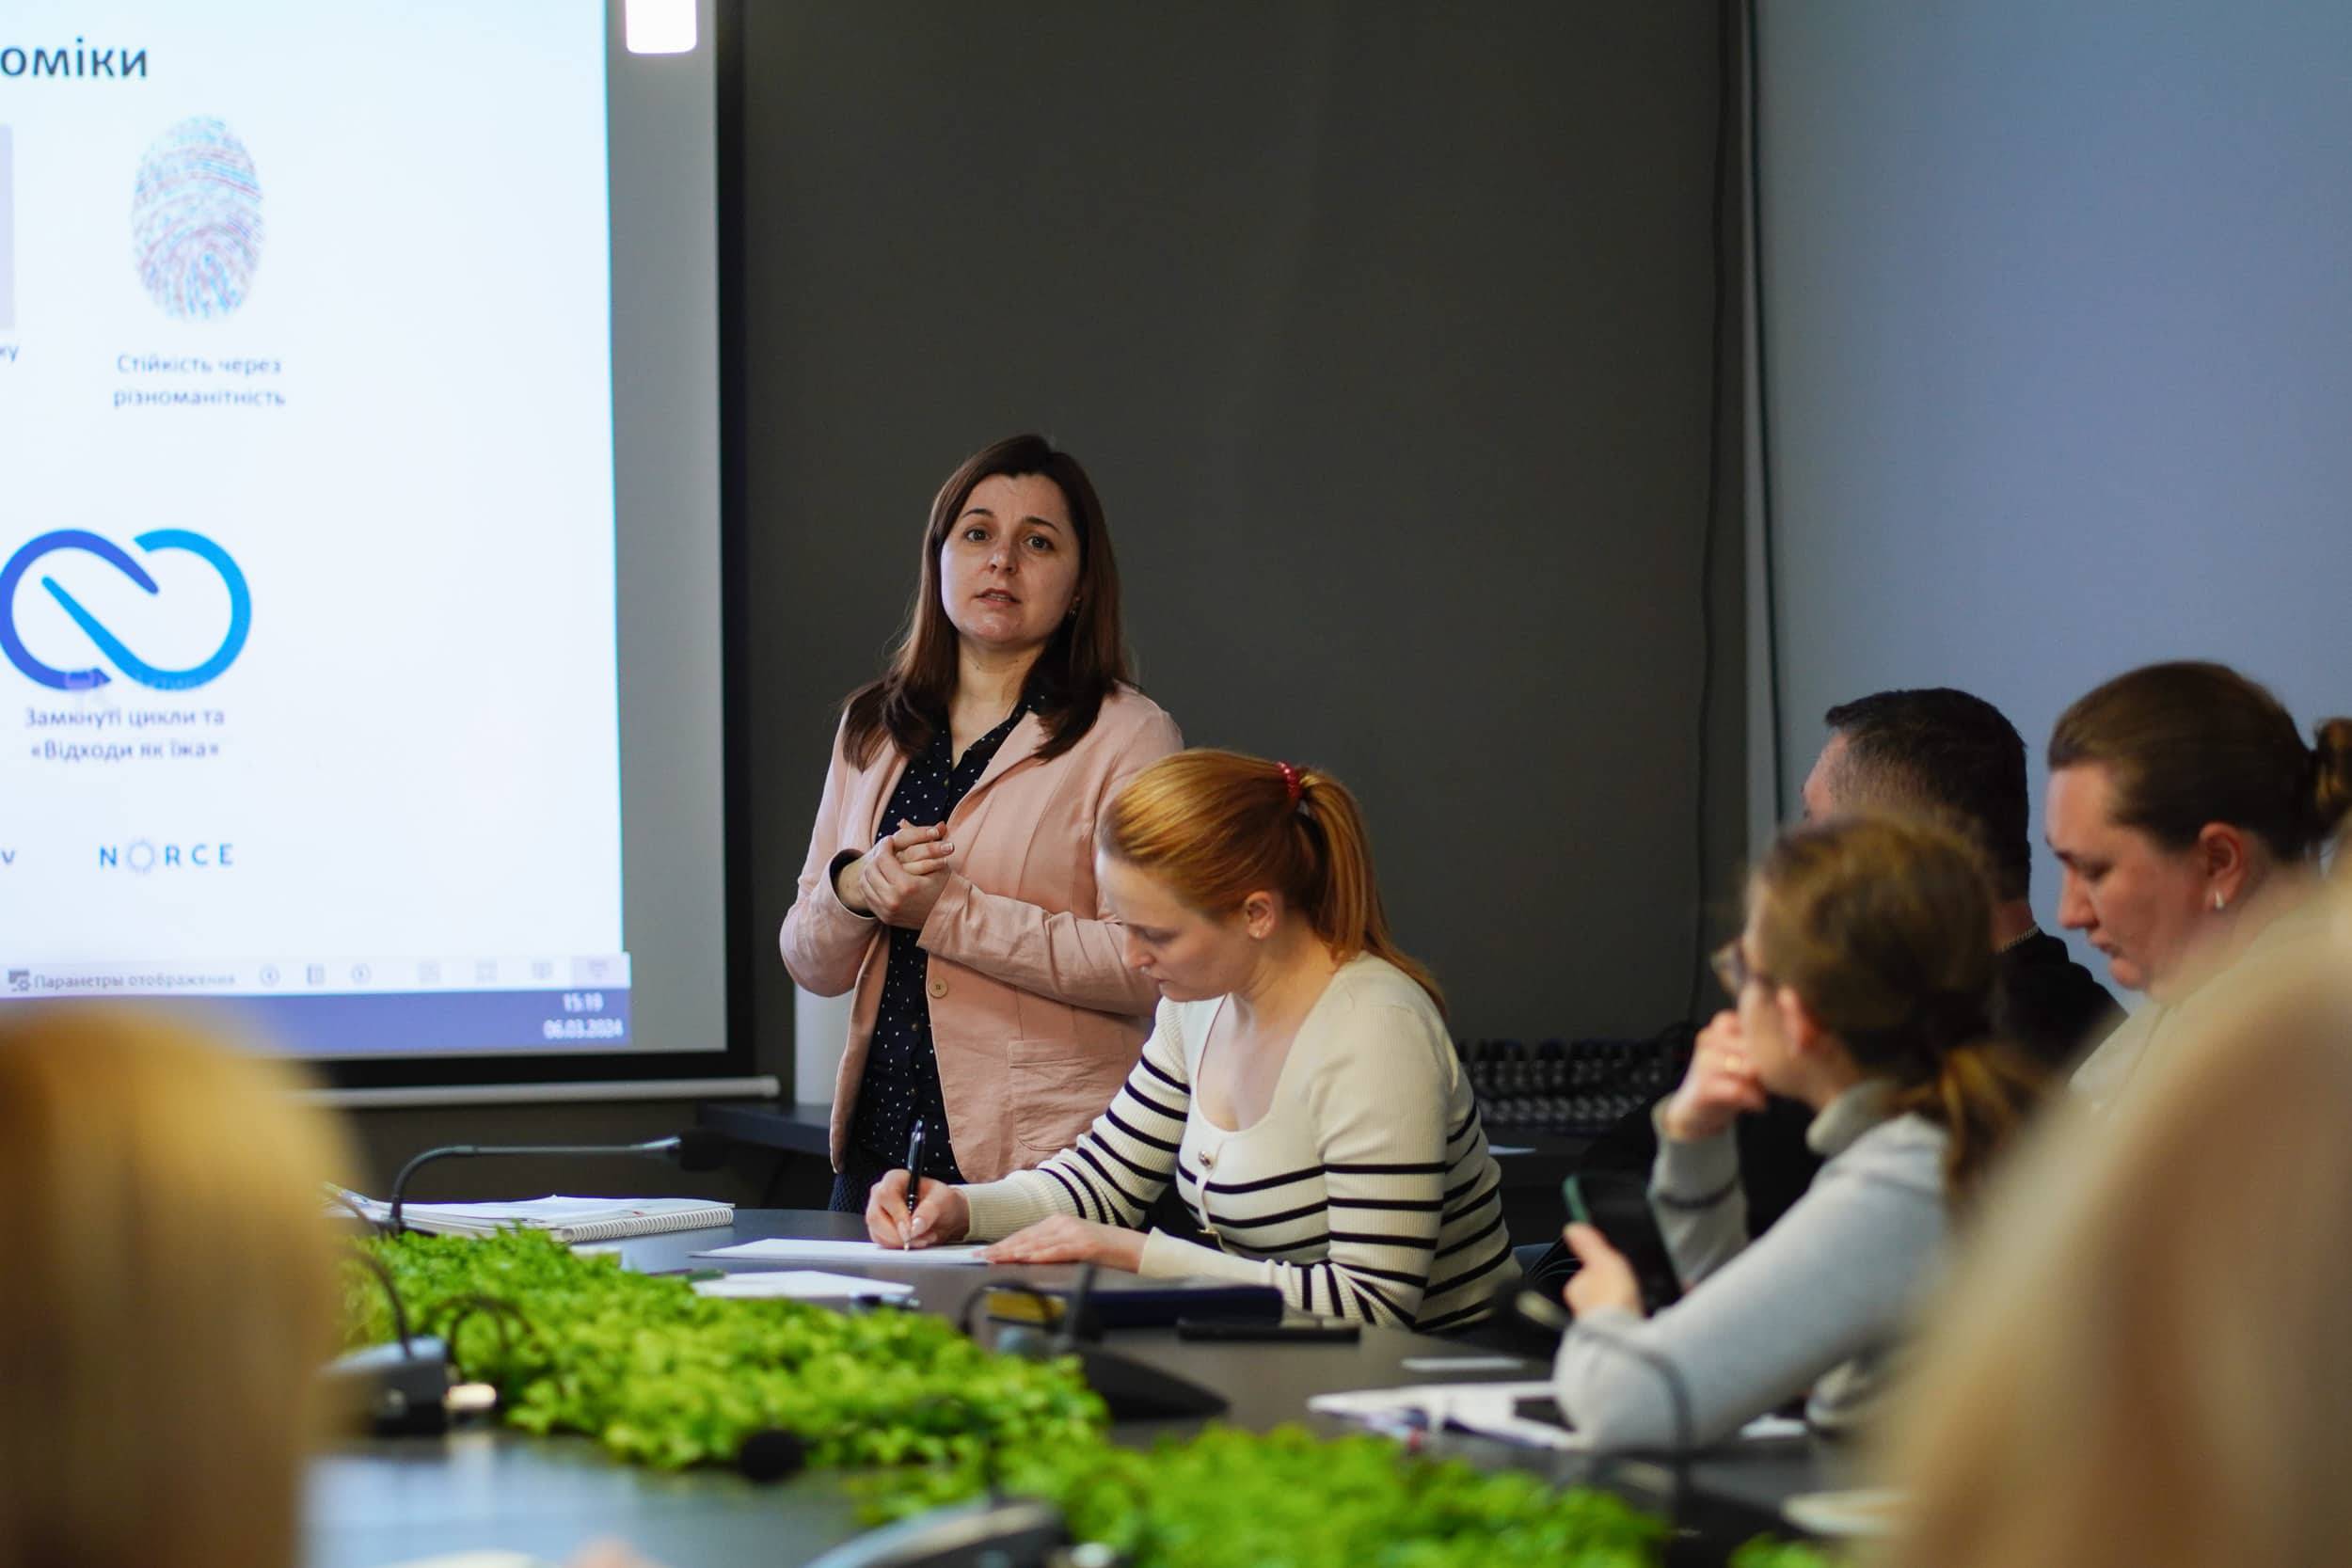 Пропозиції для підтримки зелених і соціальних інновацій та підприємництва обговорювали представники міськради з громадськістю та науковою спільнотою Ужгорода